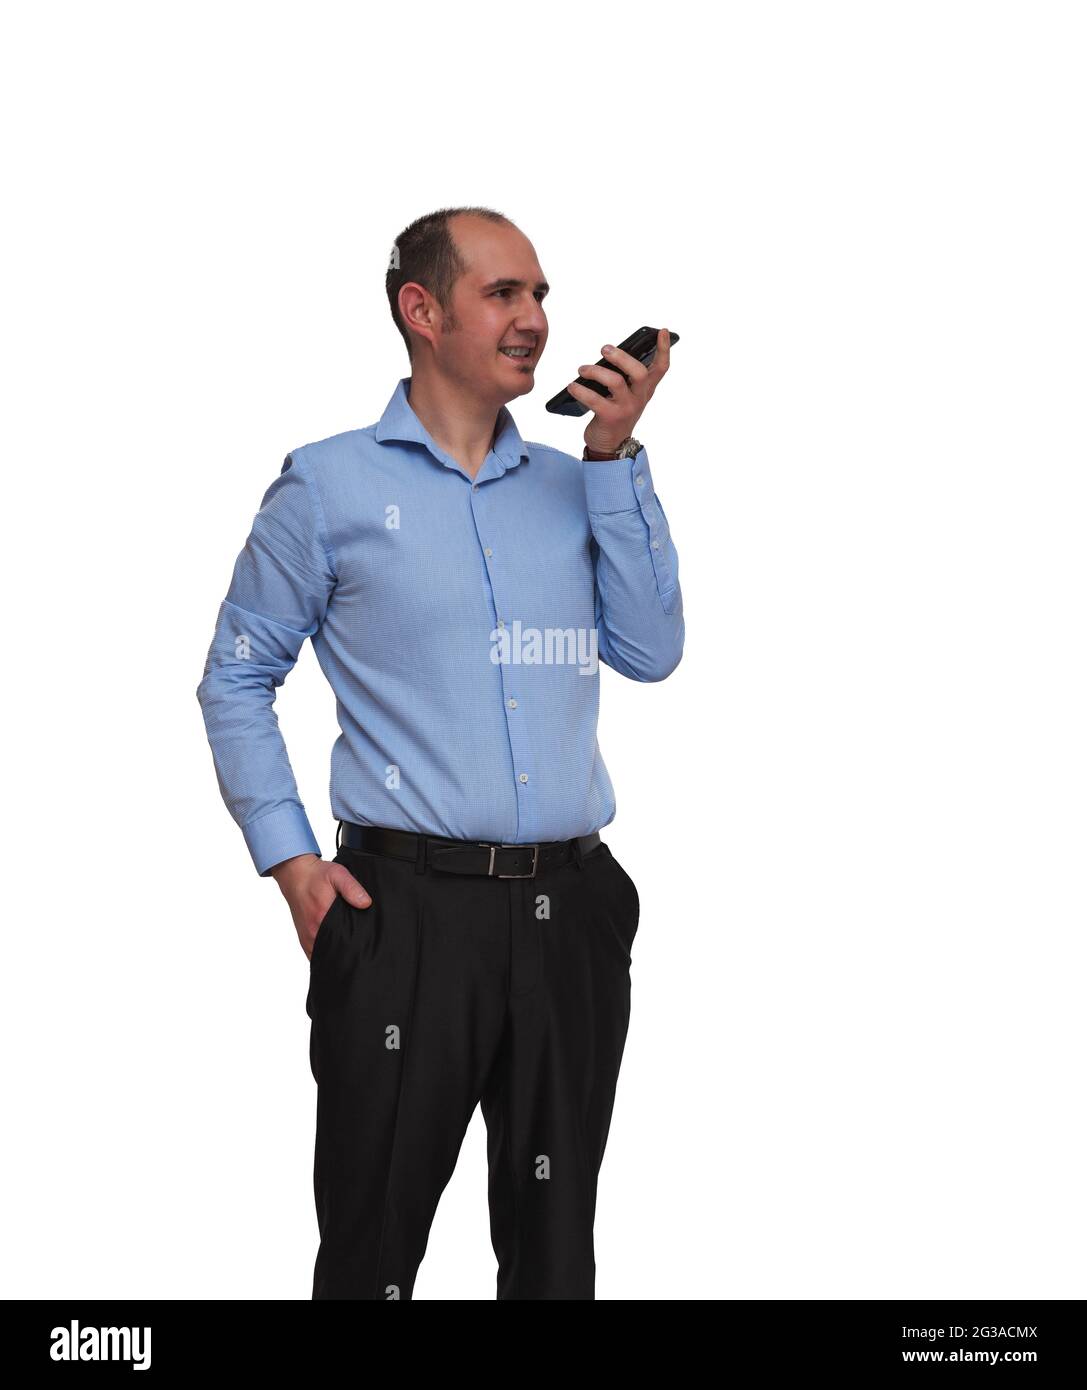 Un homme chauve habillé d'une chemise bleue et d'un pantalon noir  enregistrant un message audio avec son smartphone isolé sur fond blanc.  Peut être un employé de bureau ou ba Photo Stock -